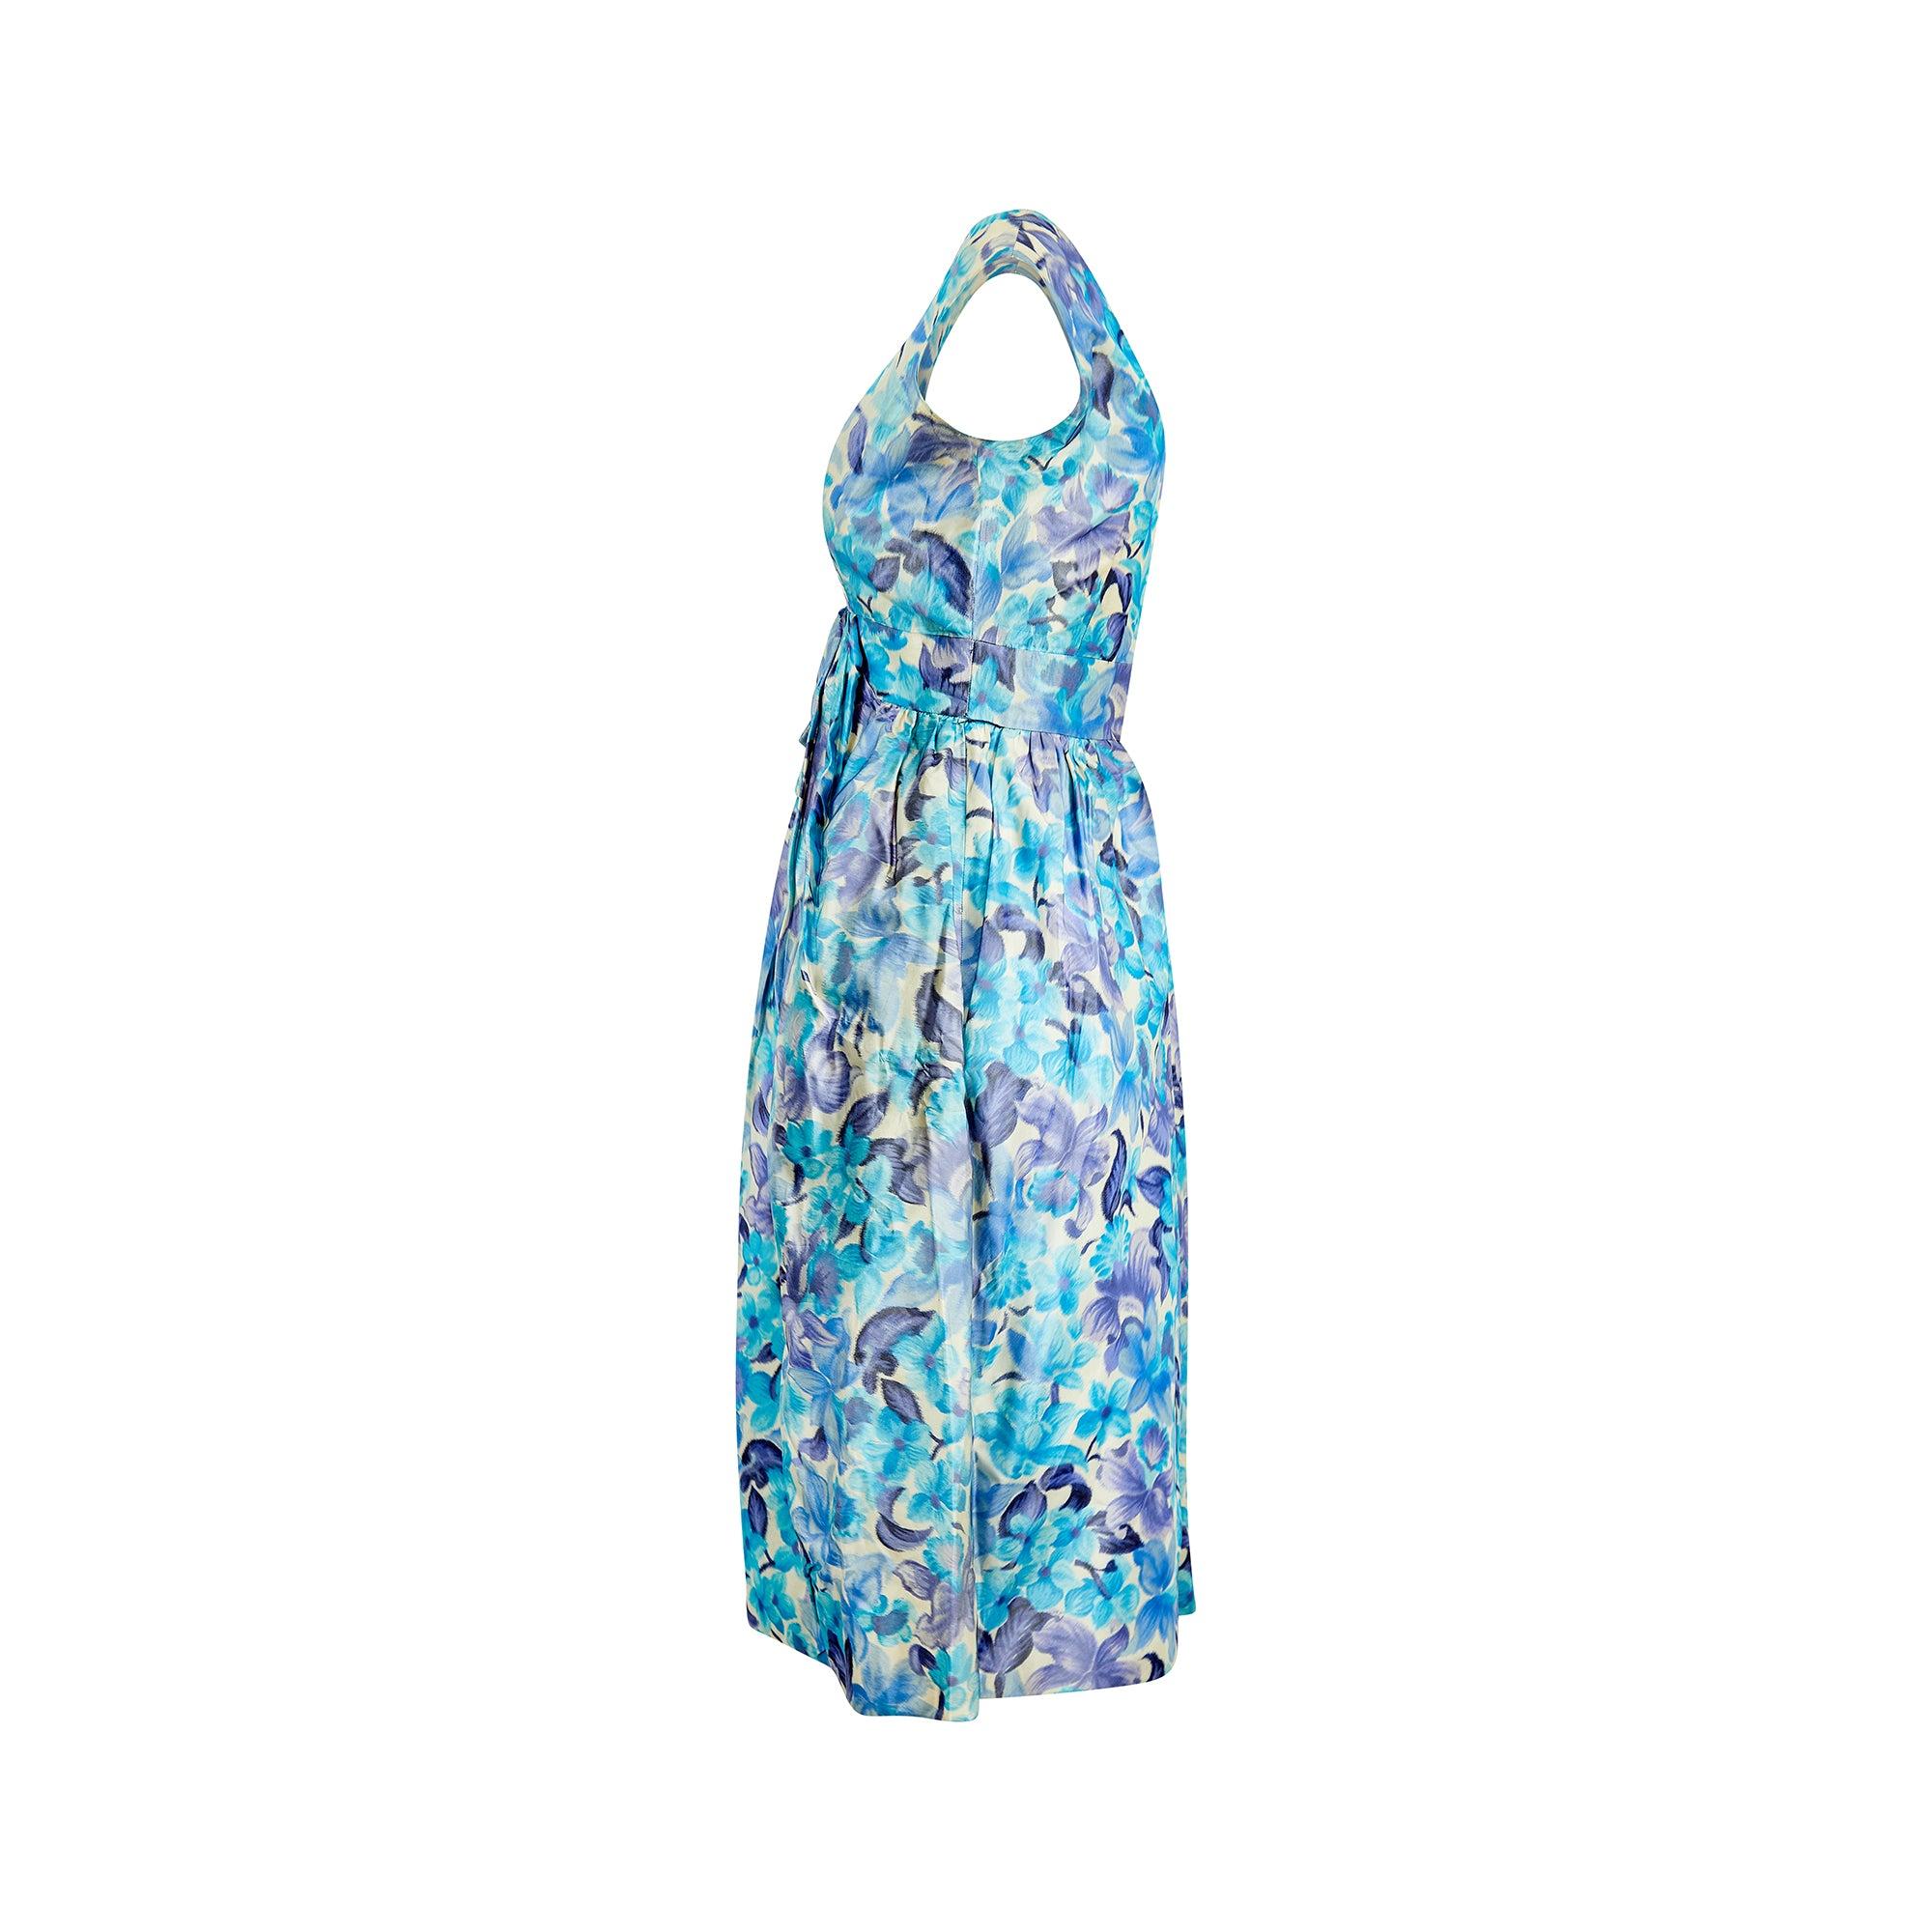 Dieses Kleid von Koupy Couture ist aus Seide gefertigt, die mit leuchtend blauen und fliederfarbenen Blumen bedruckt ist. Der weite V-Ausschnitt, ein feminines Merkmal vieler Designs der 1960er Jahre, lässt die Schlüsselbeine und das Dekolleté zur